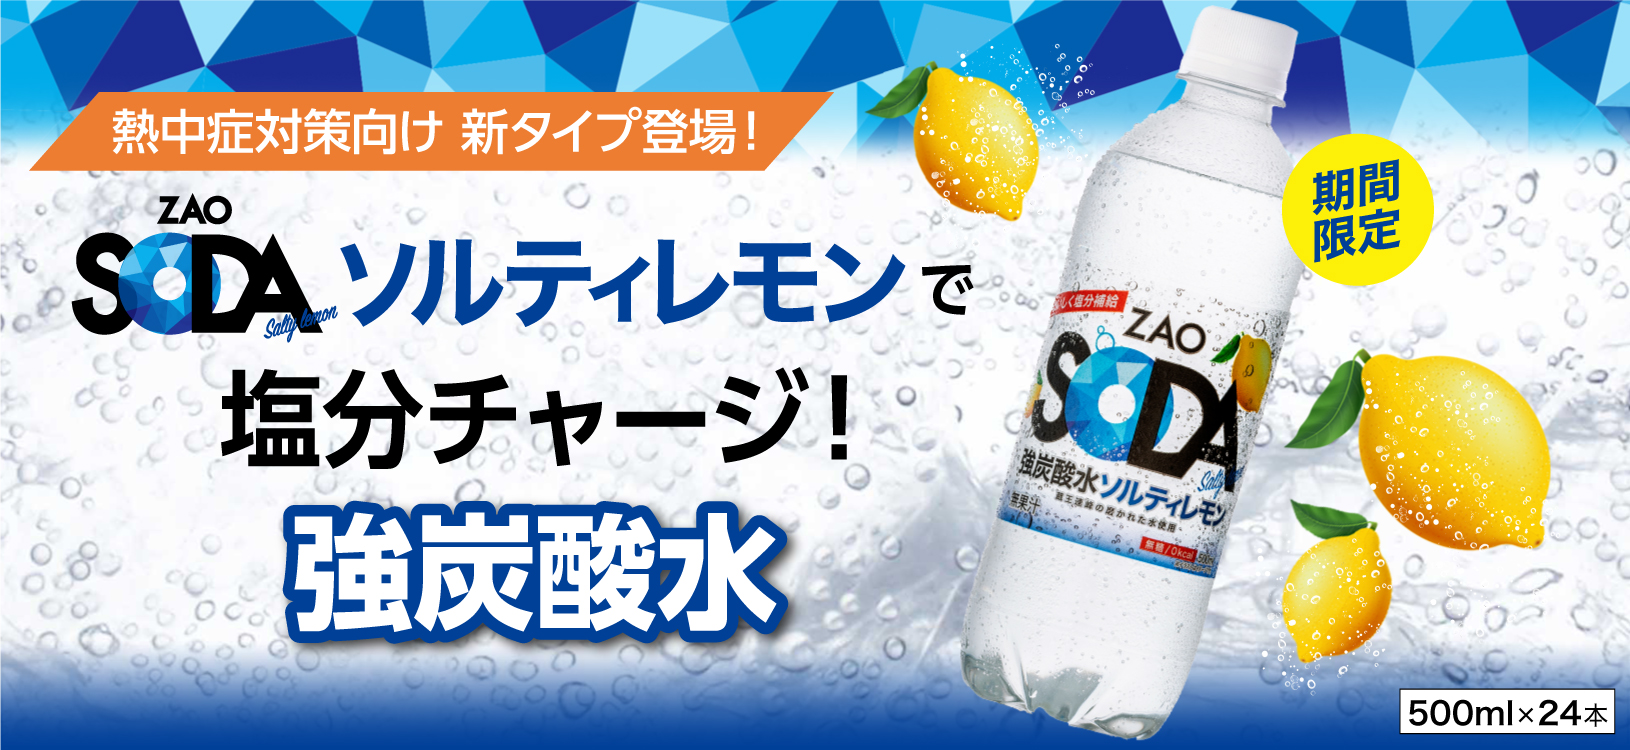 新商品「ZAO SODA ソルティレモン」のお知らせ